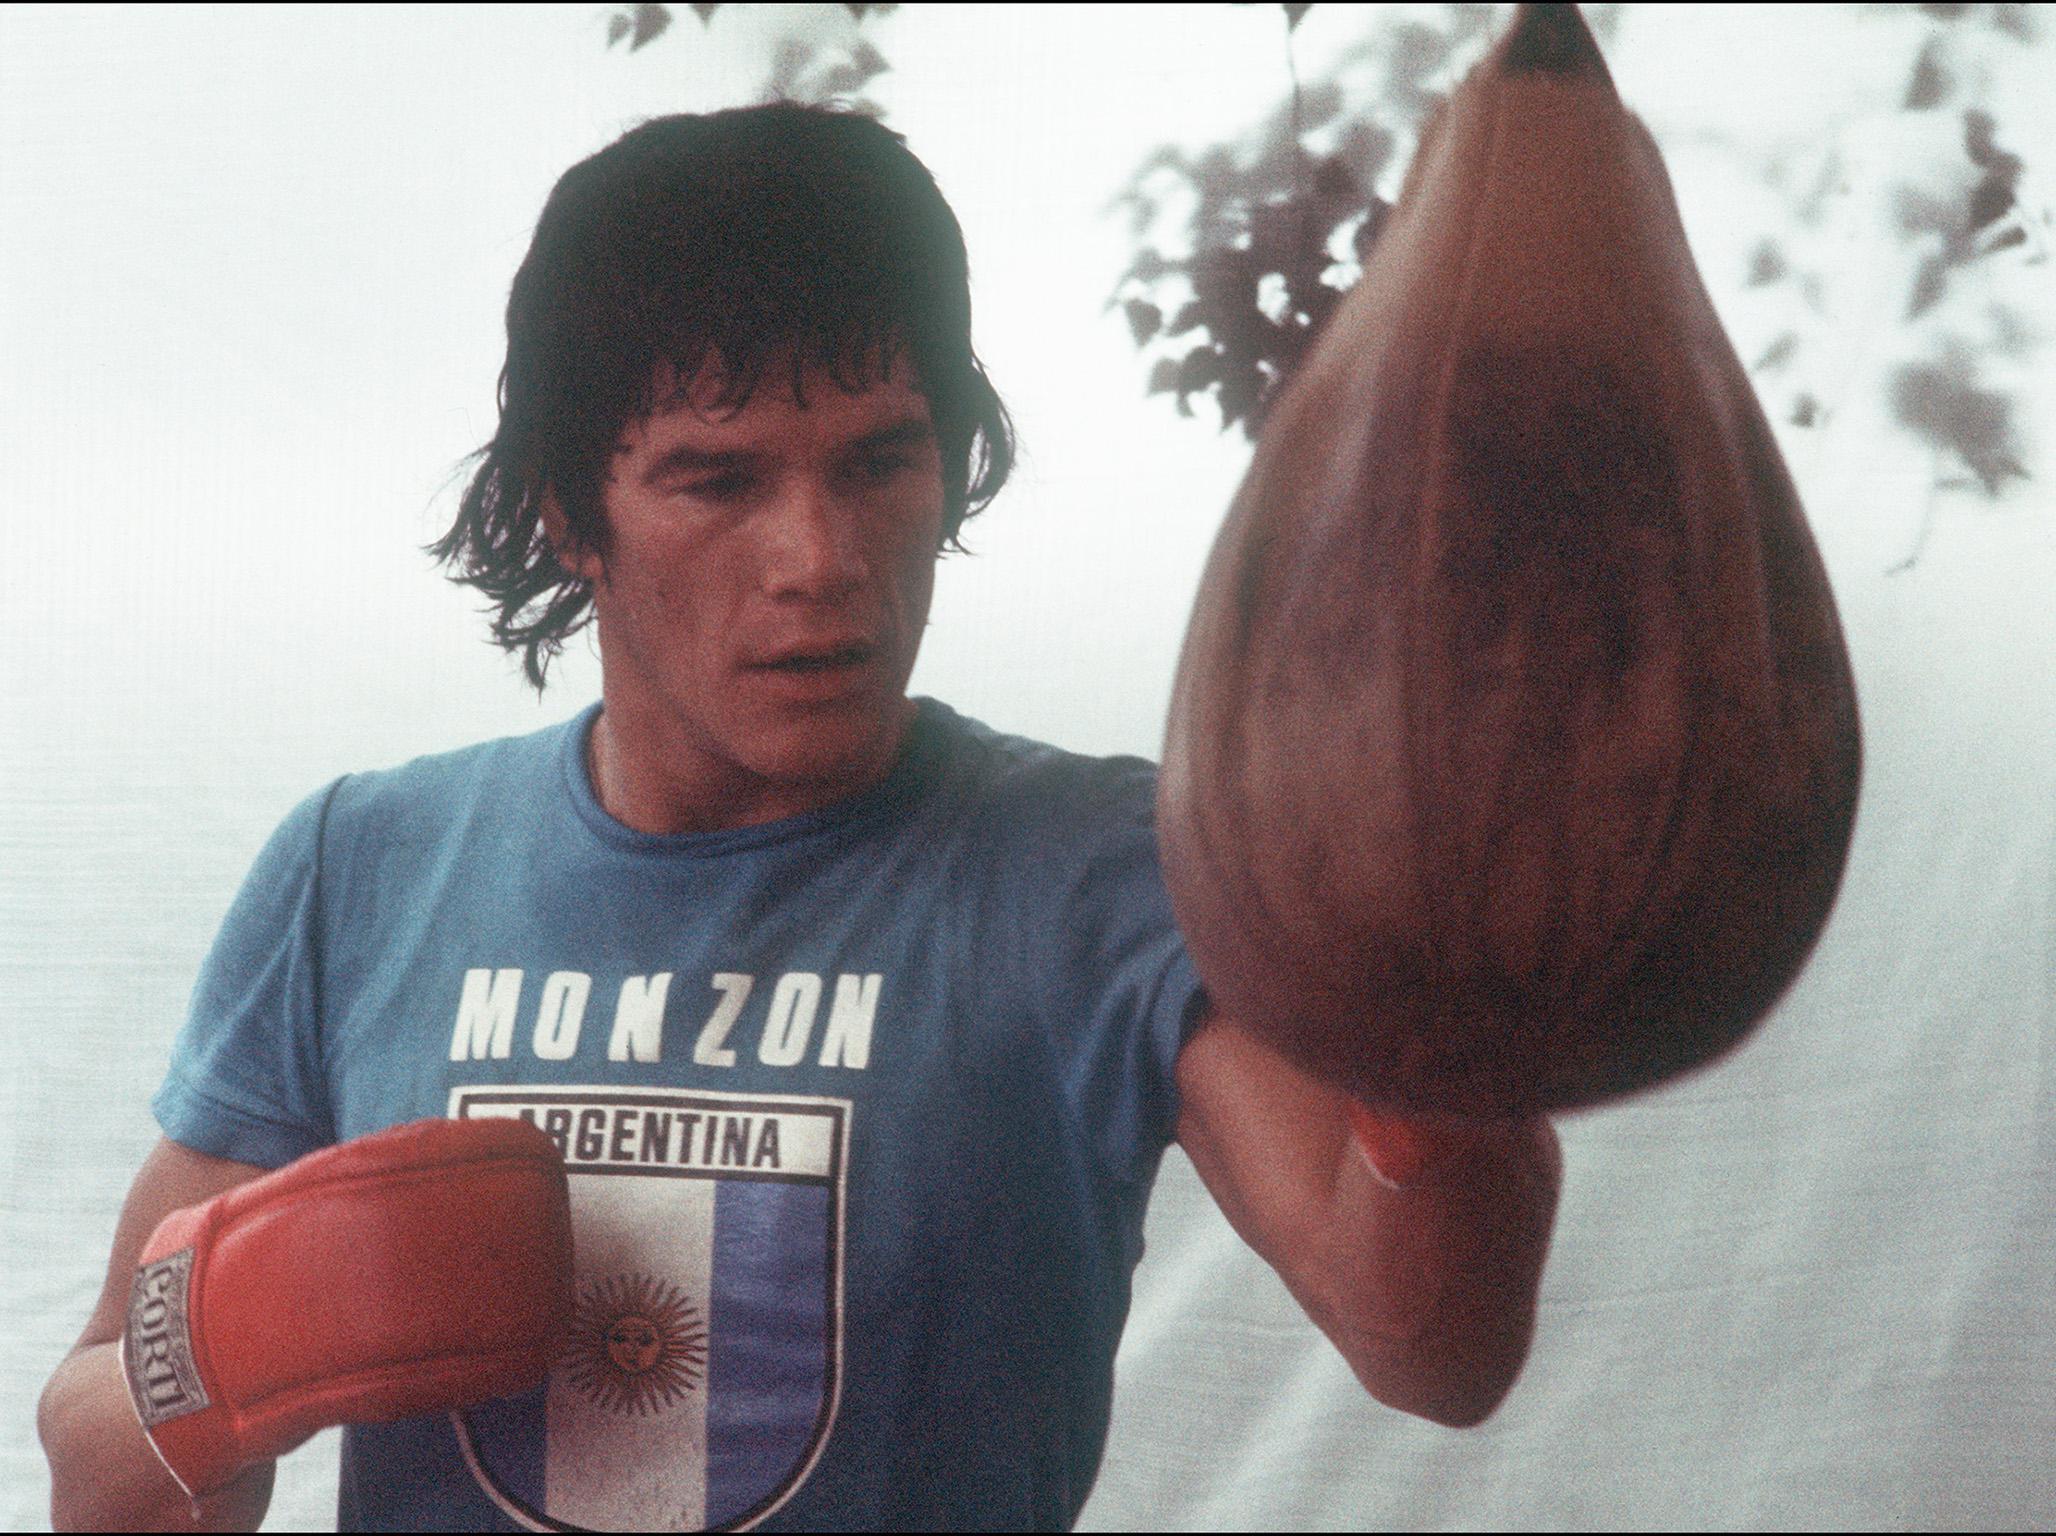 Carlos Monzon pictured training in Paris in 1976